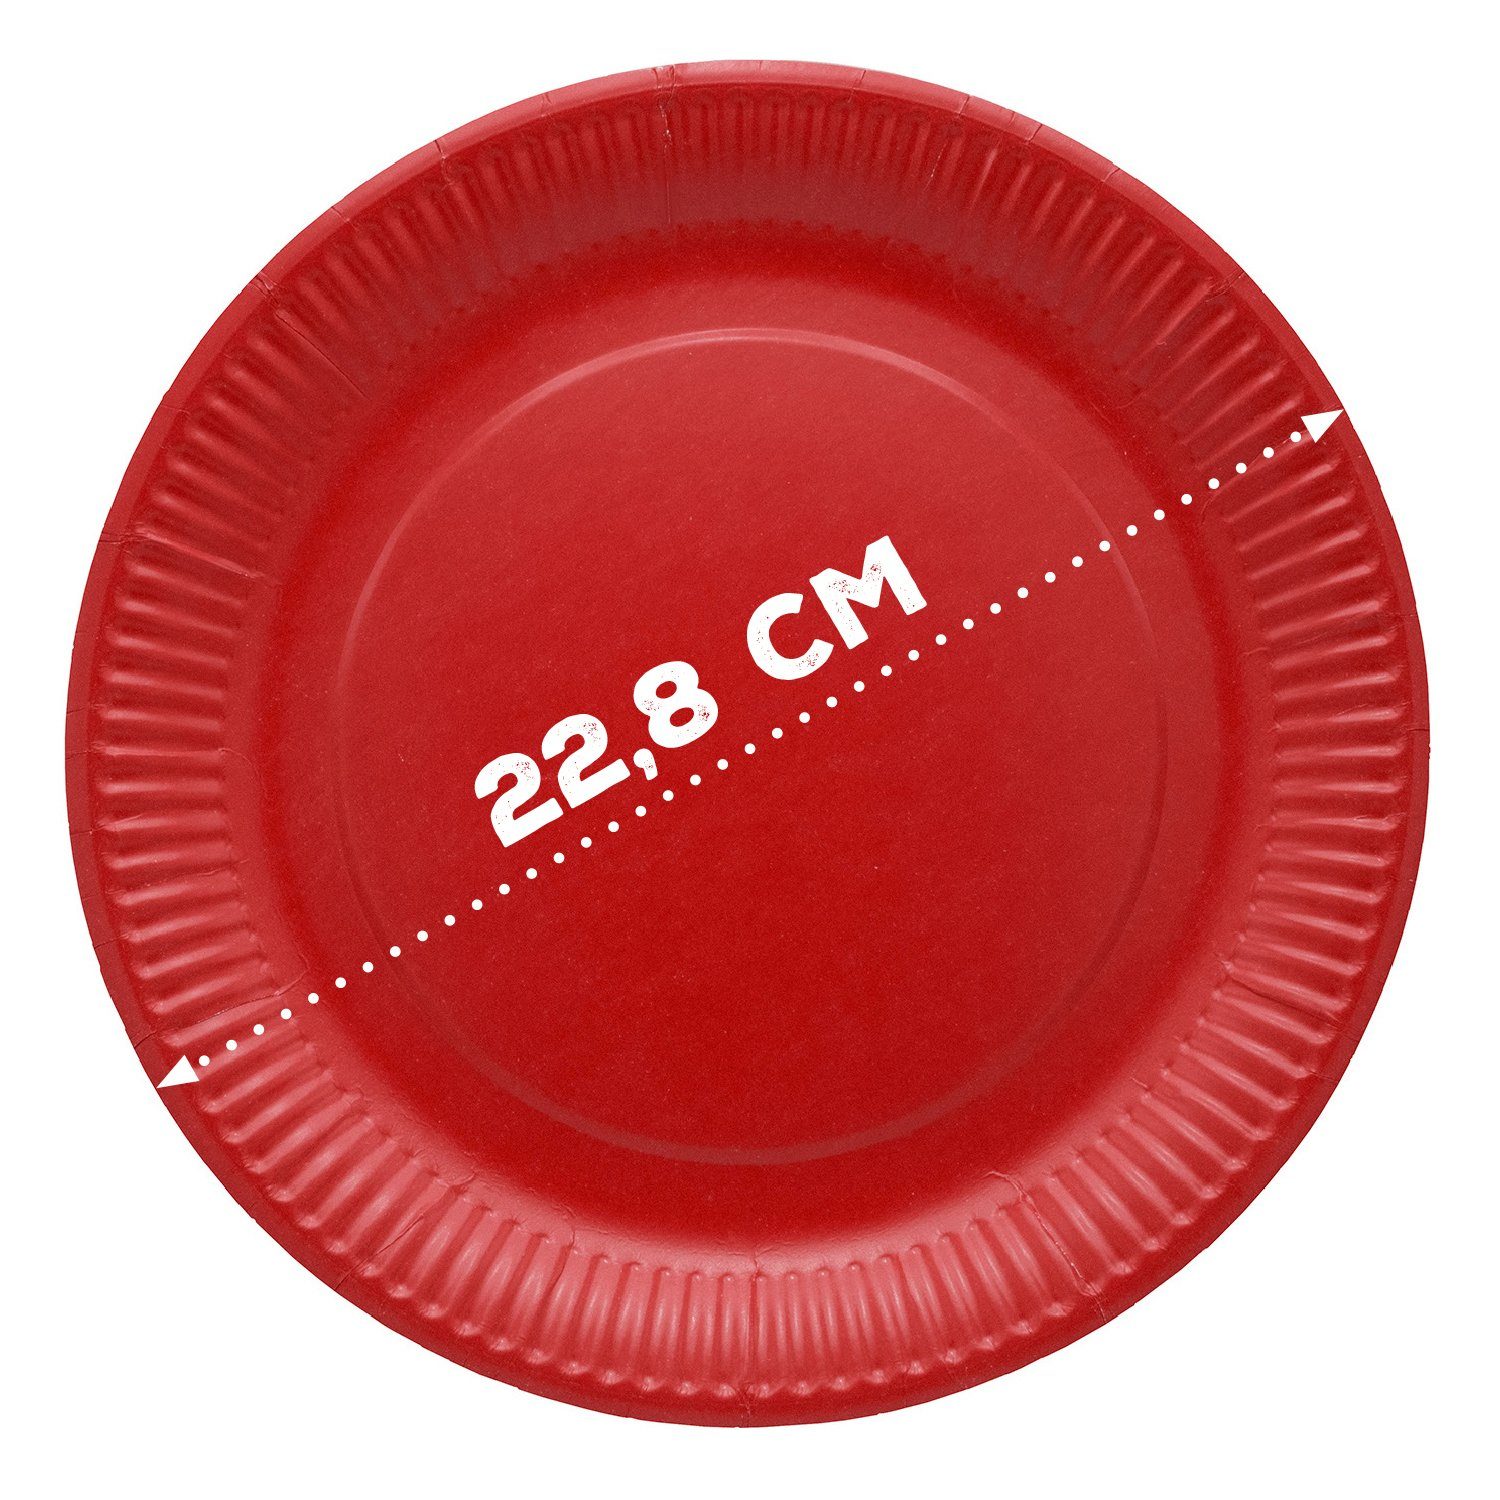 Ökolution Pappteller Ökolution und STK, rot 20 Einweg-Teller rund, bunt